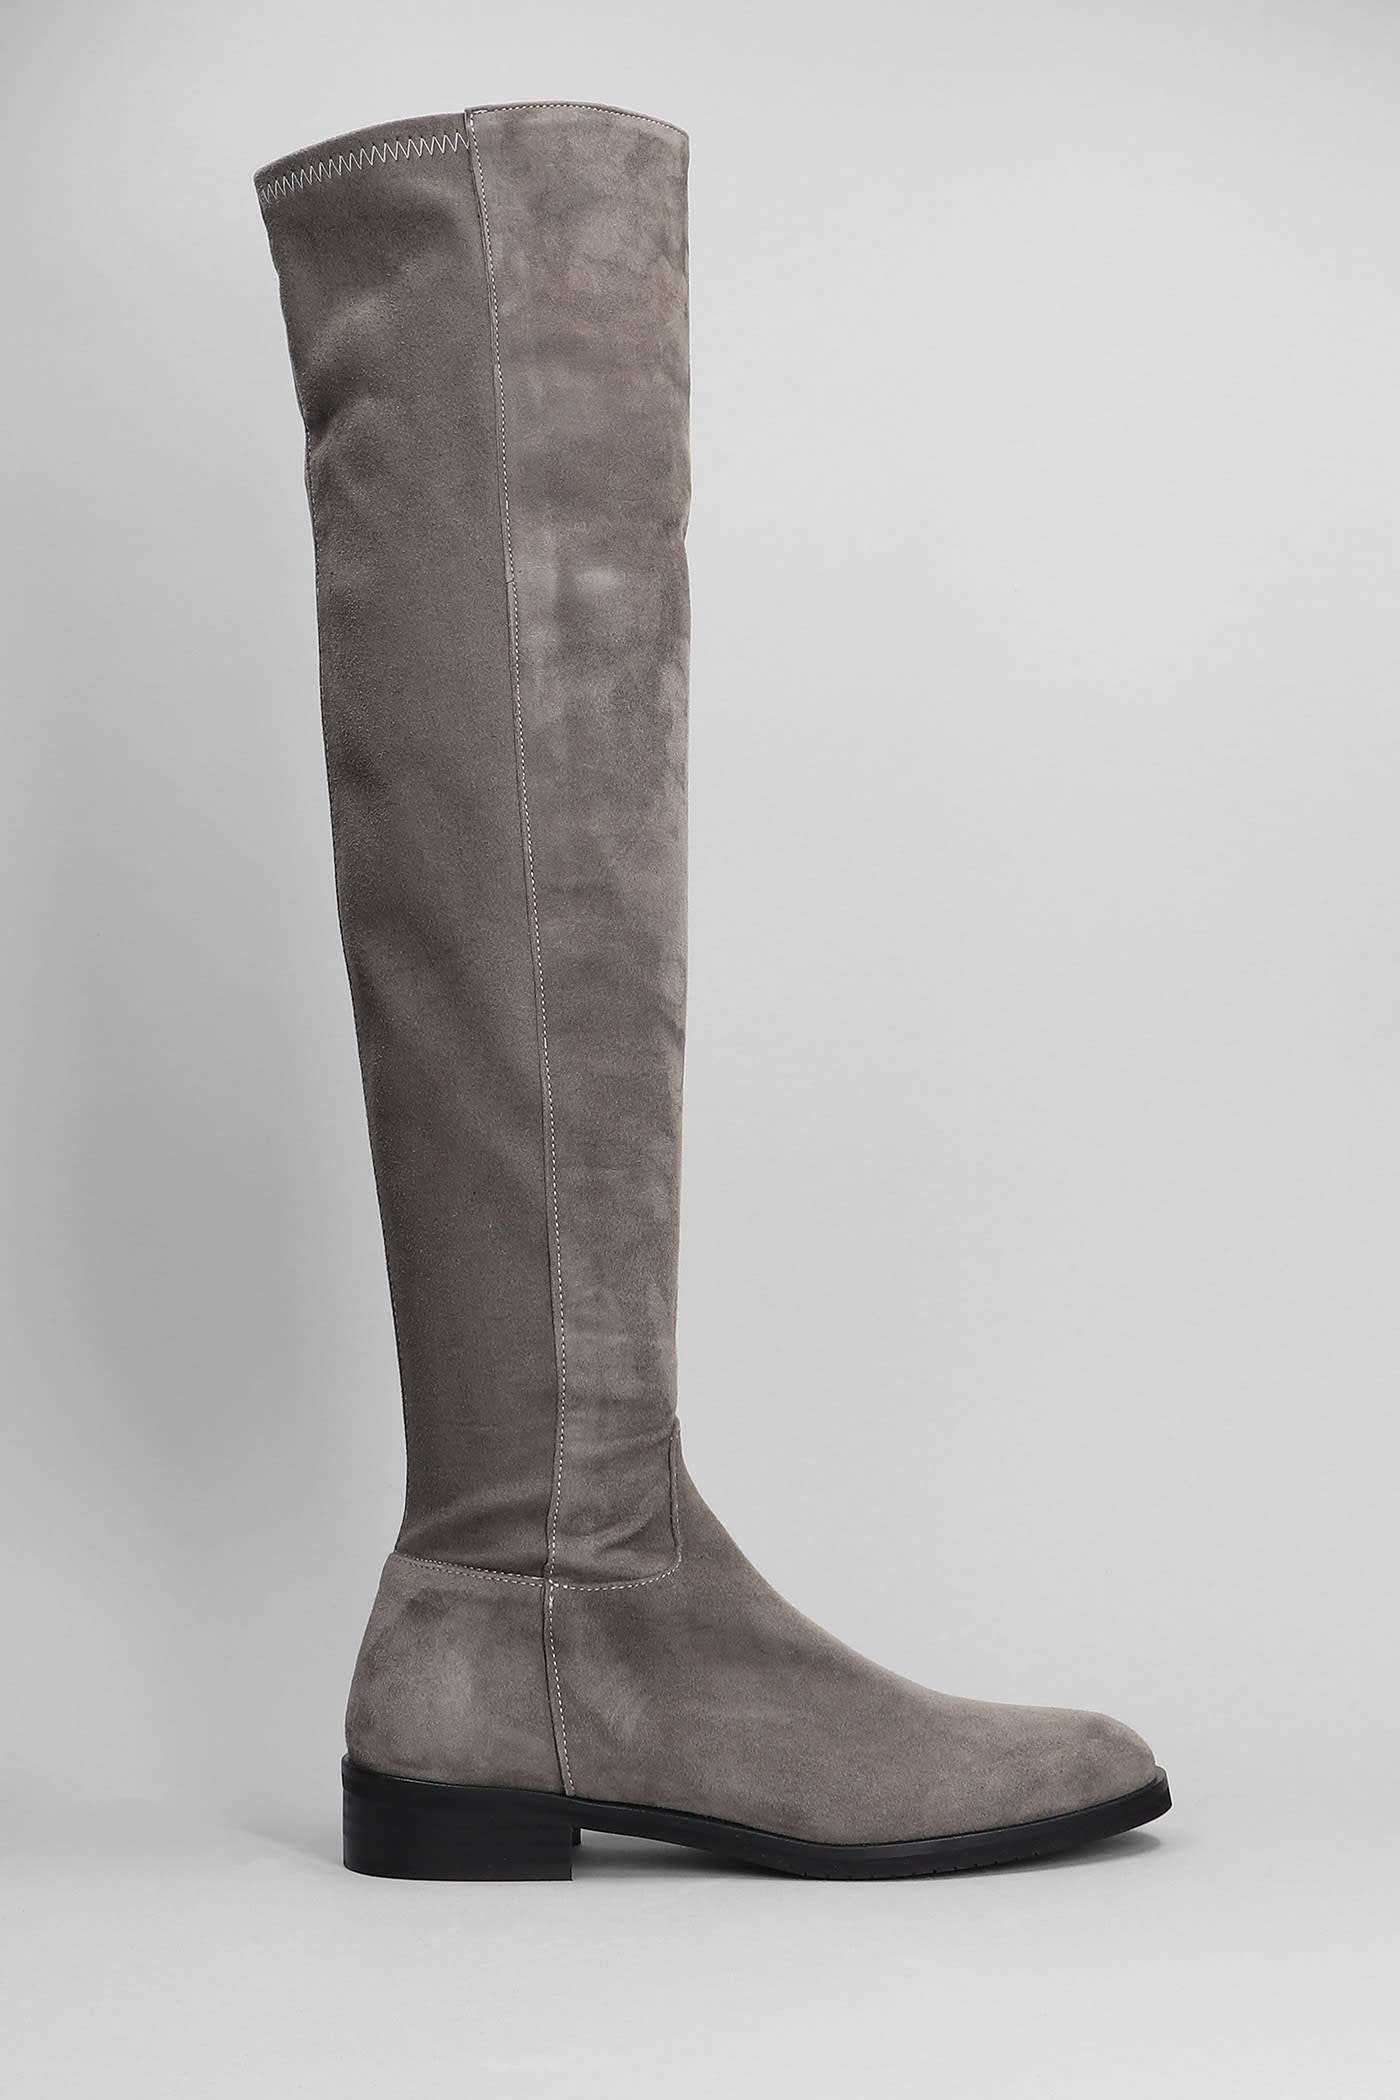 Low Heels Boots In Grey Suede